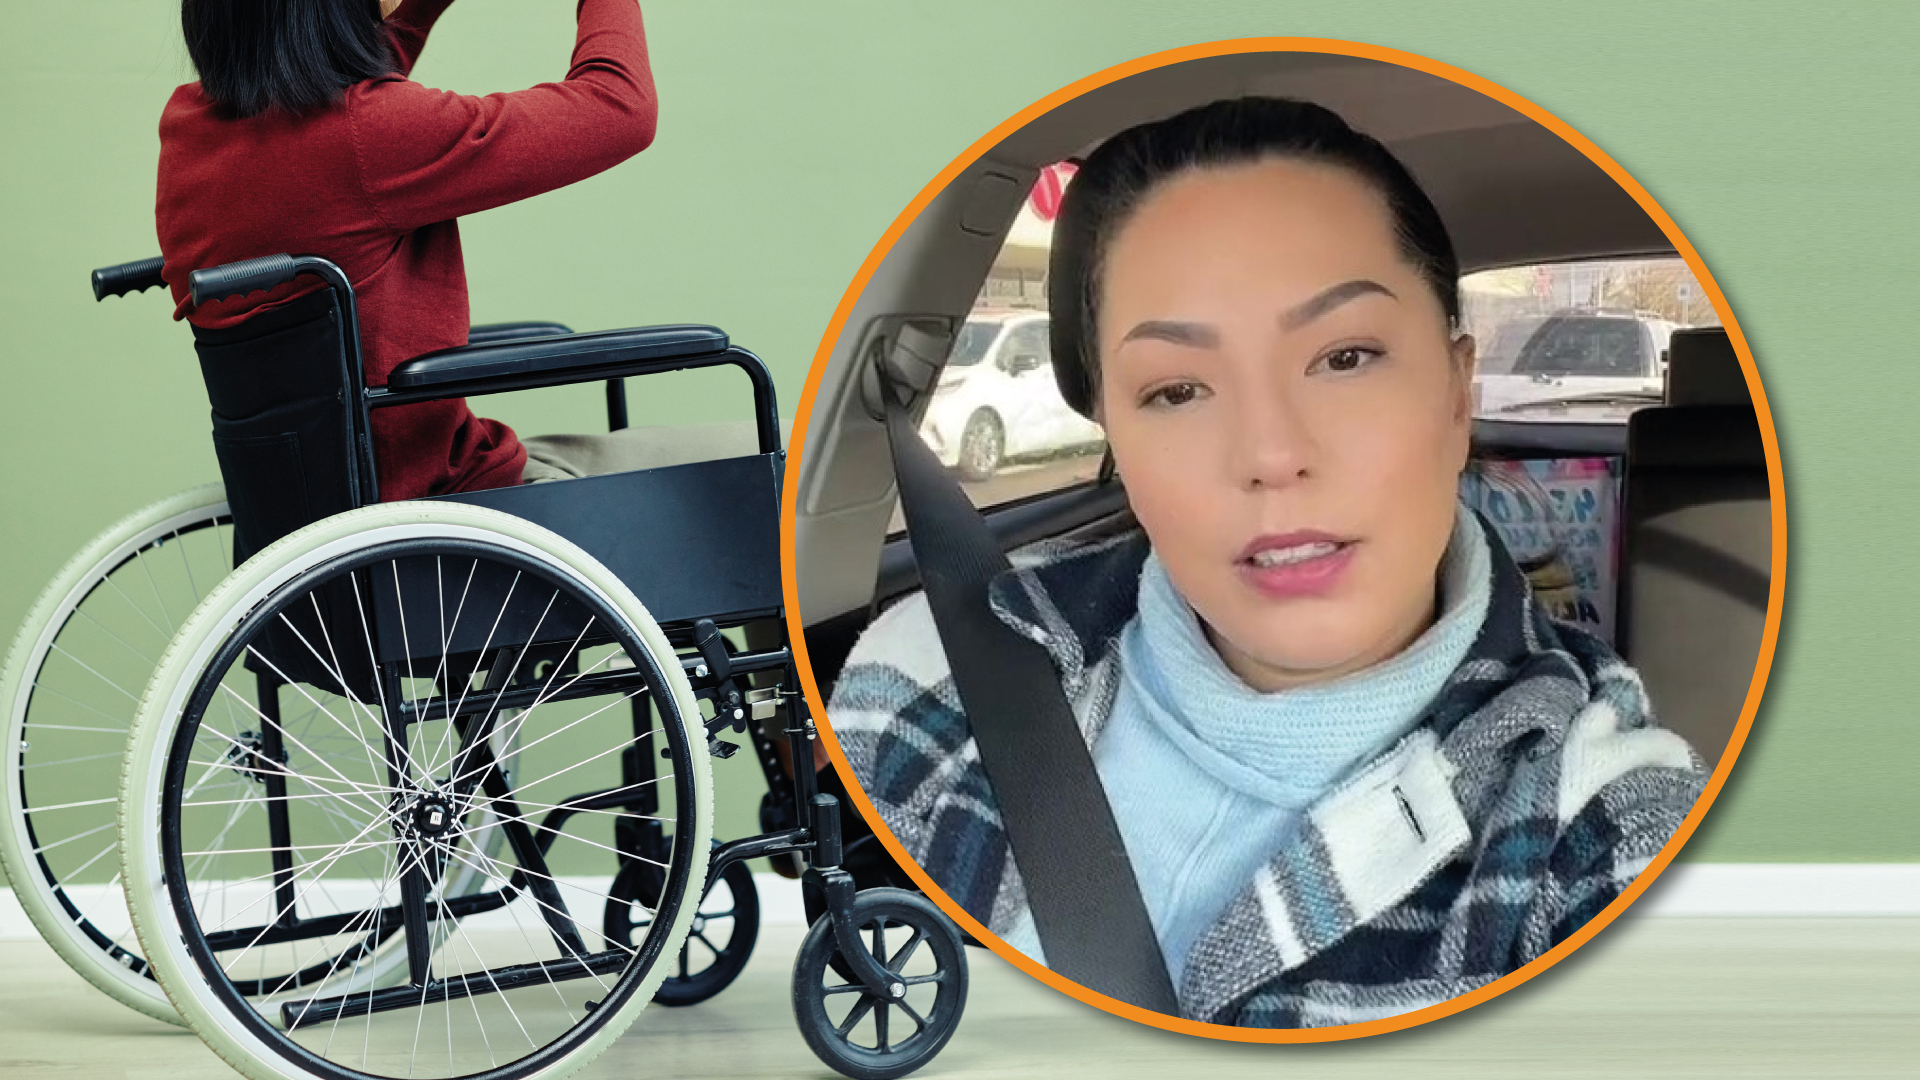 “Fue lo peor”: el calvario de una joven que después de una cita terminó en silla de ruedas